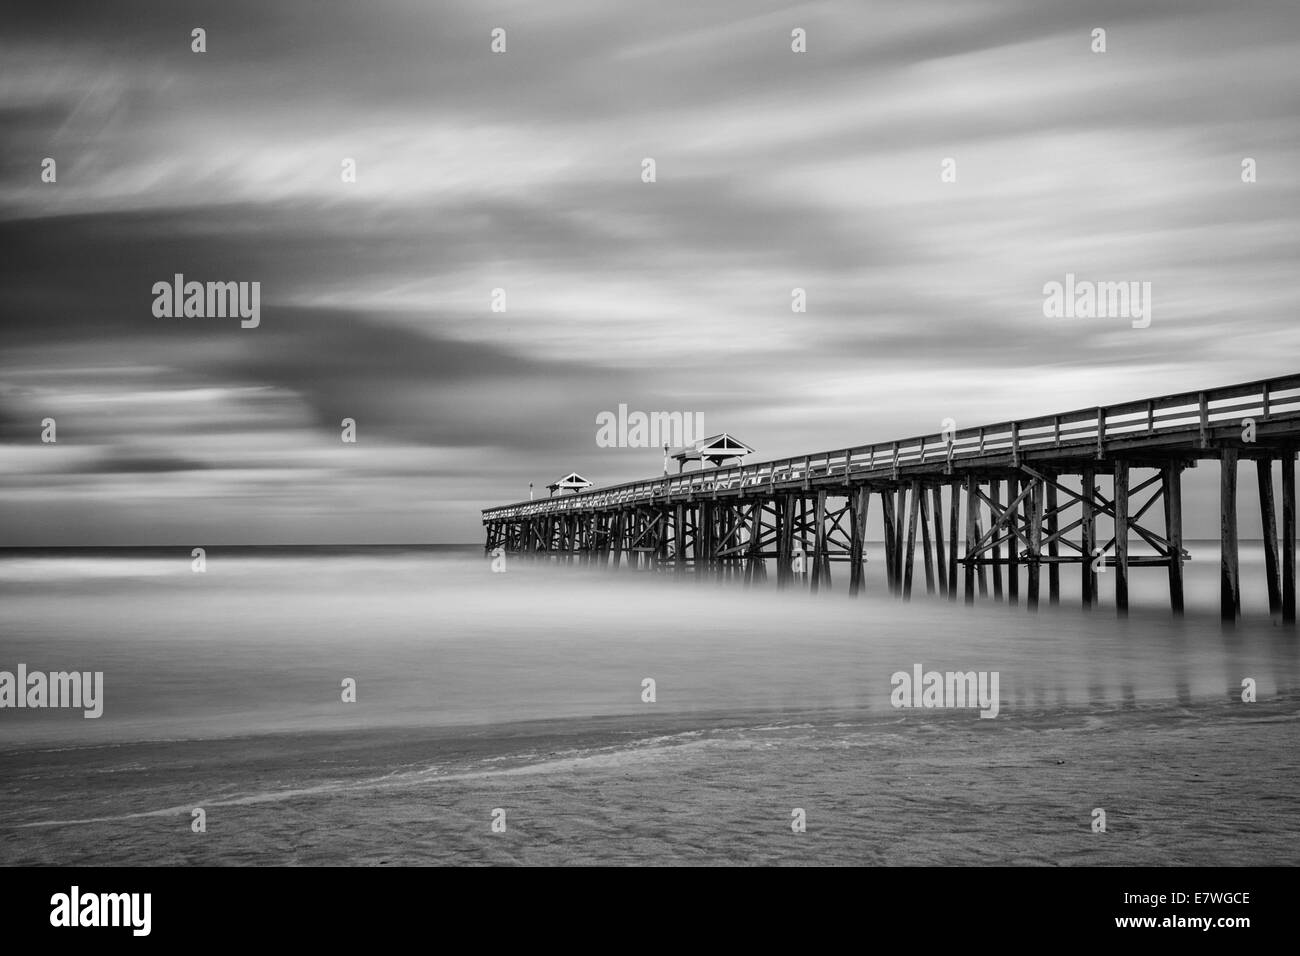 Une longue exposition photo de la jetée de pêche en Amelia Island Fernandina Beach, en Floride. Converties en noir et blanc. Banque D'Images